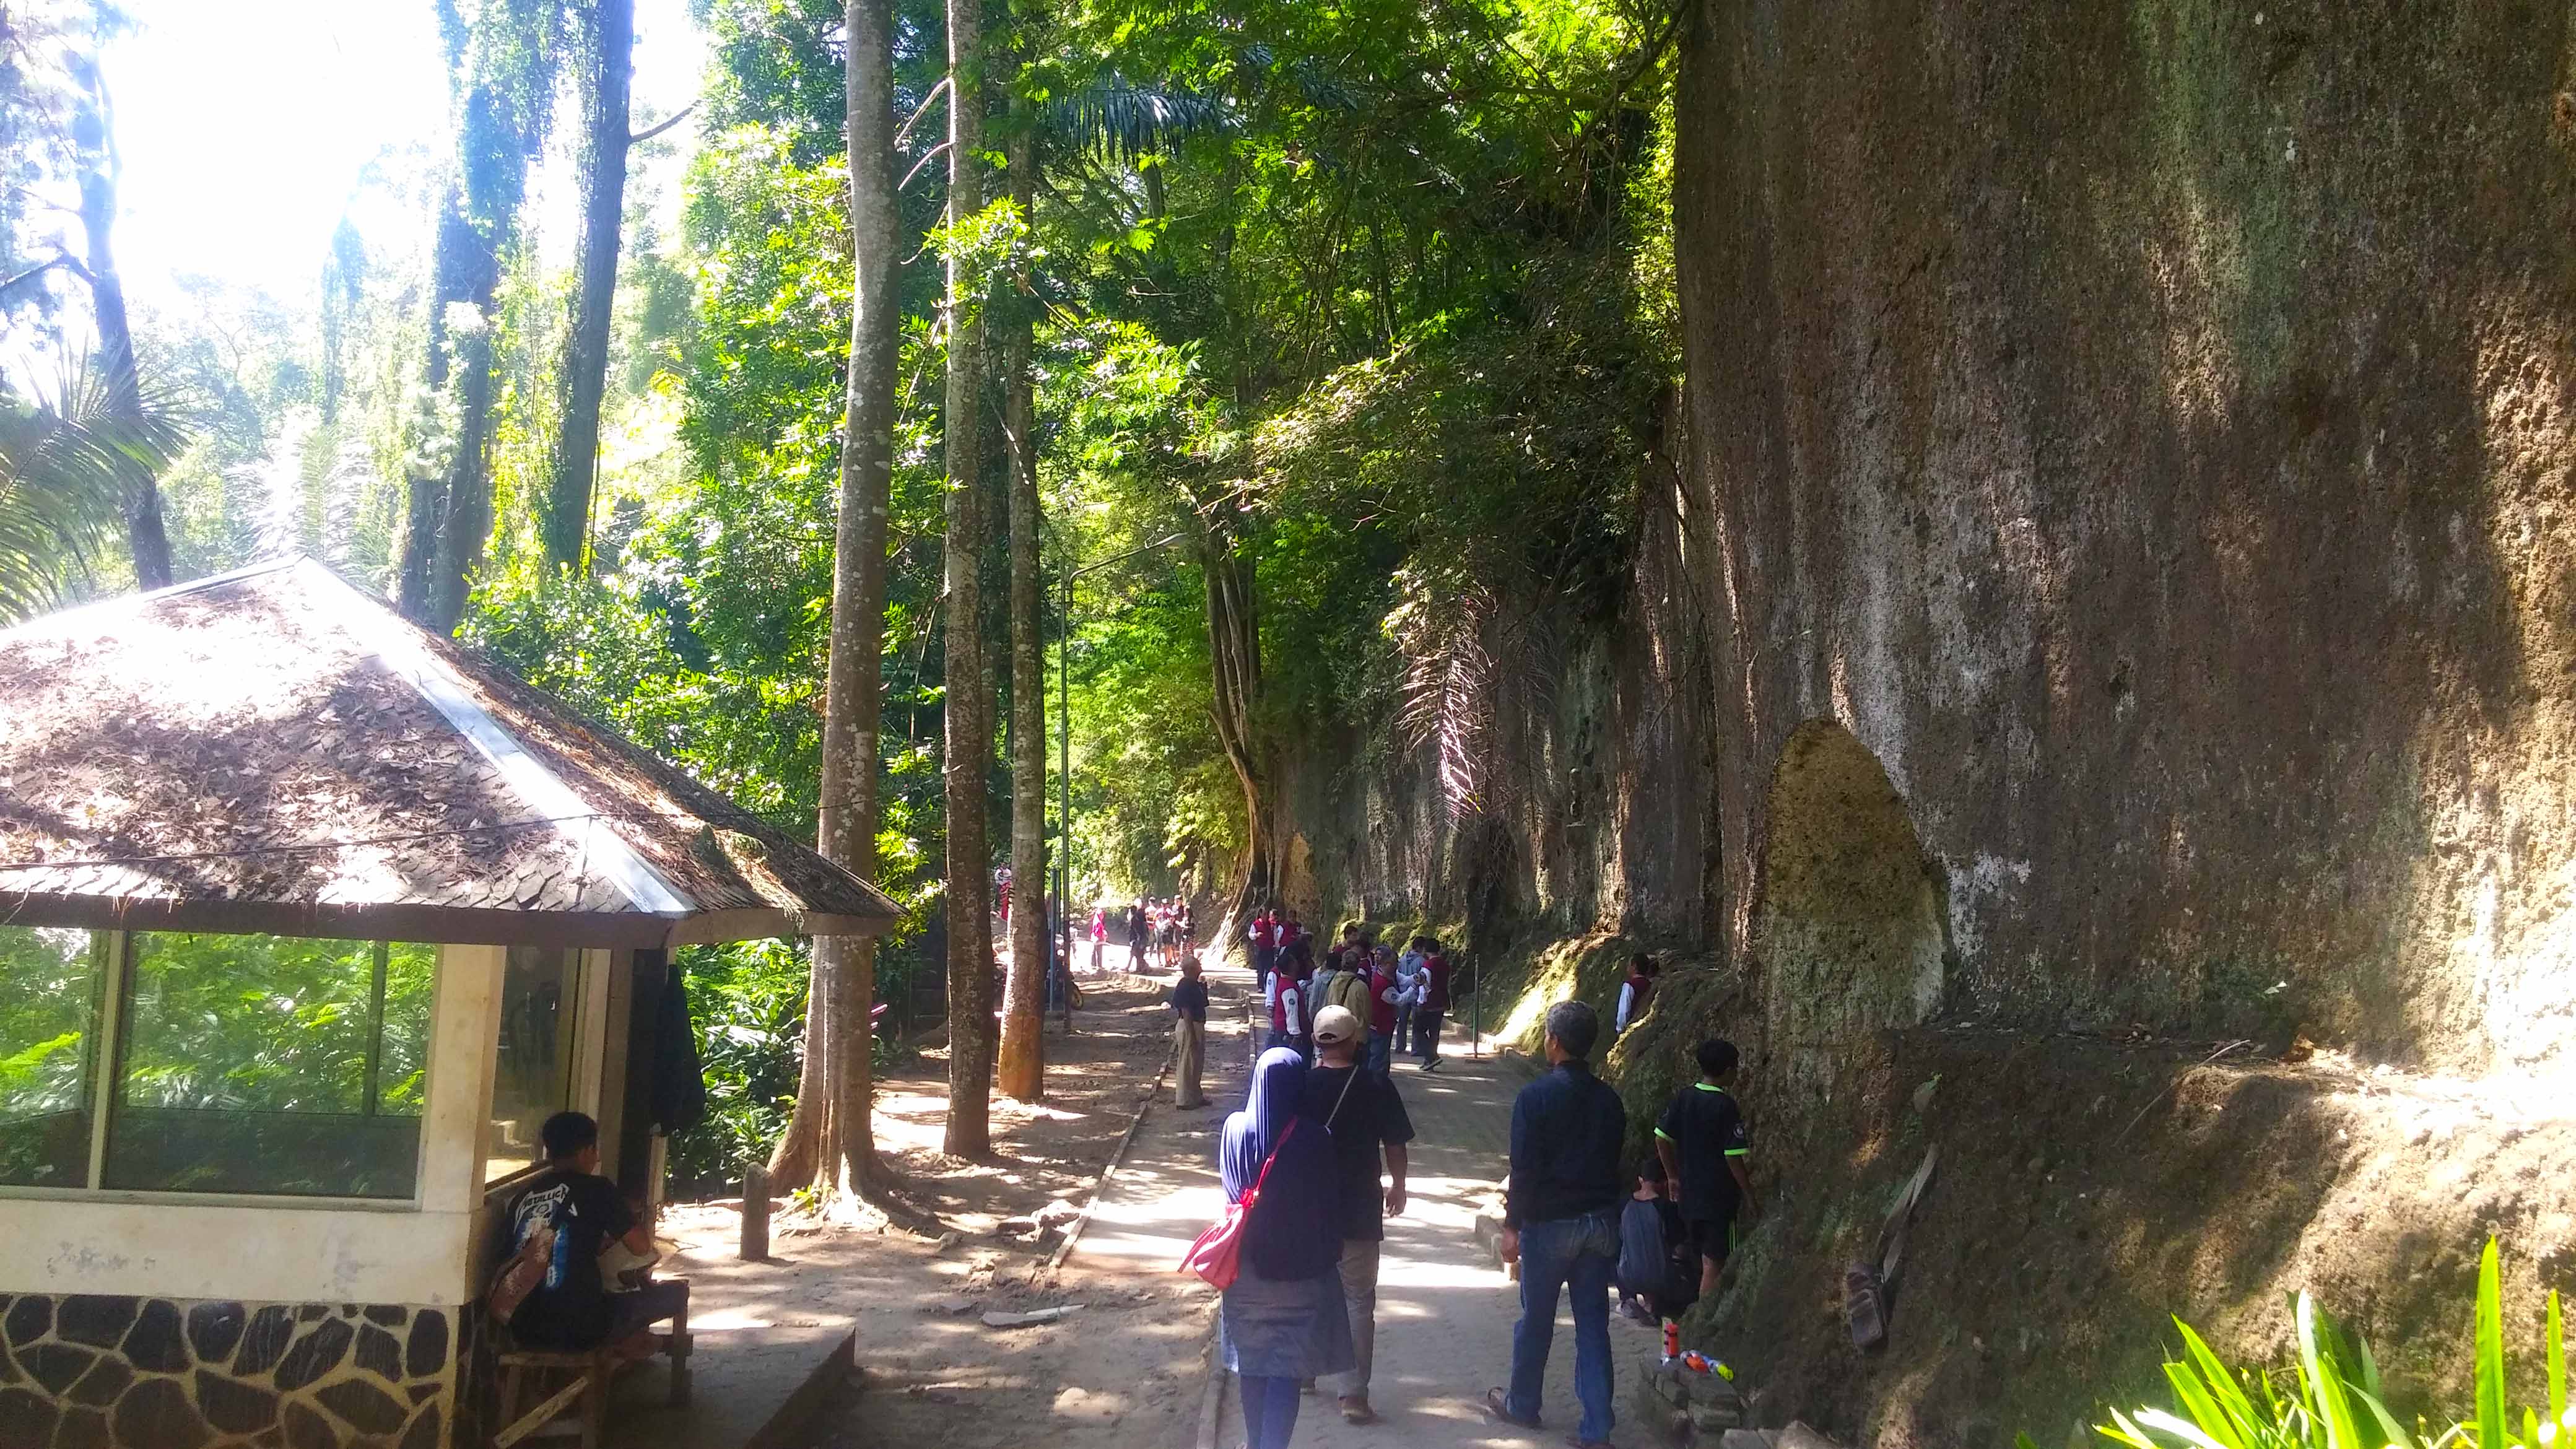 Menjelajahi Alam Taman Hutan Raya Ir. H. Djuanda Bandung